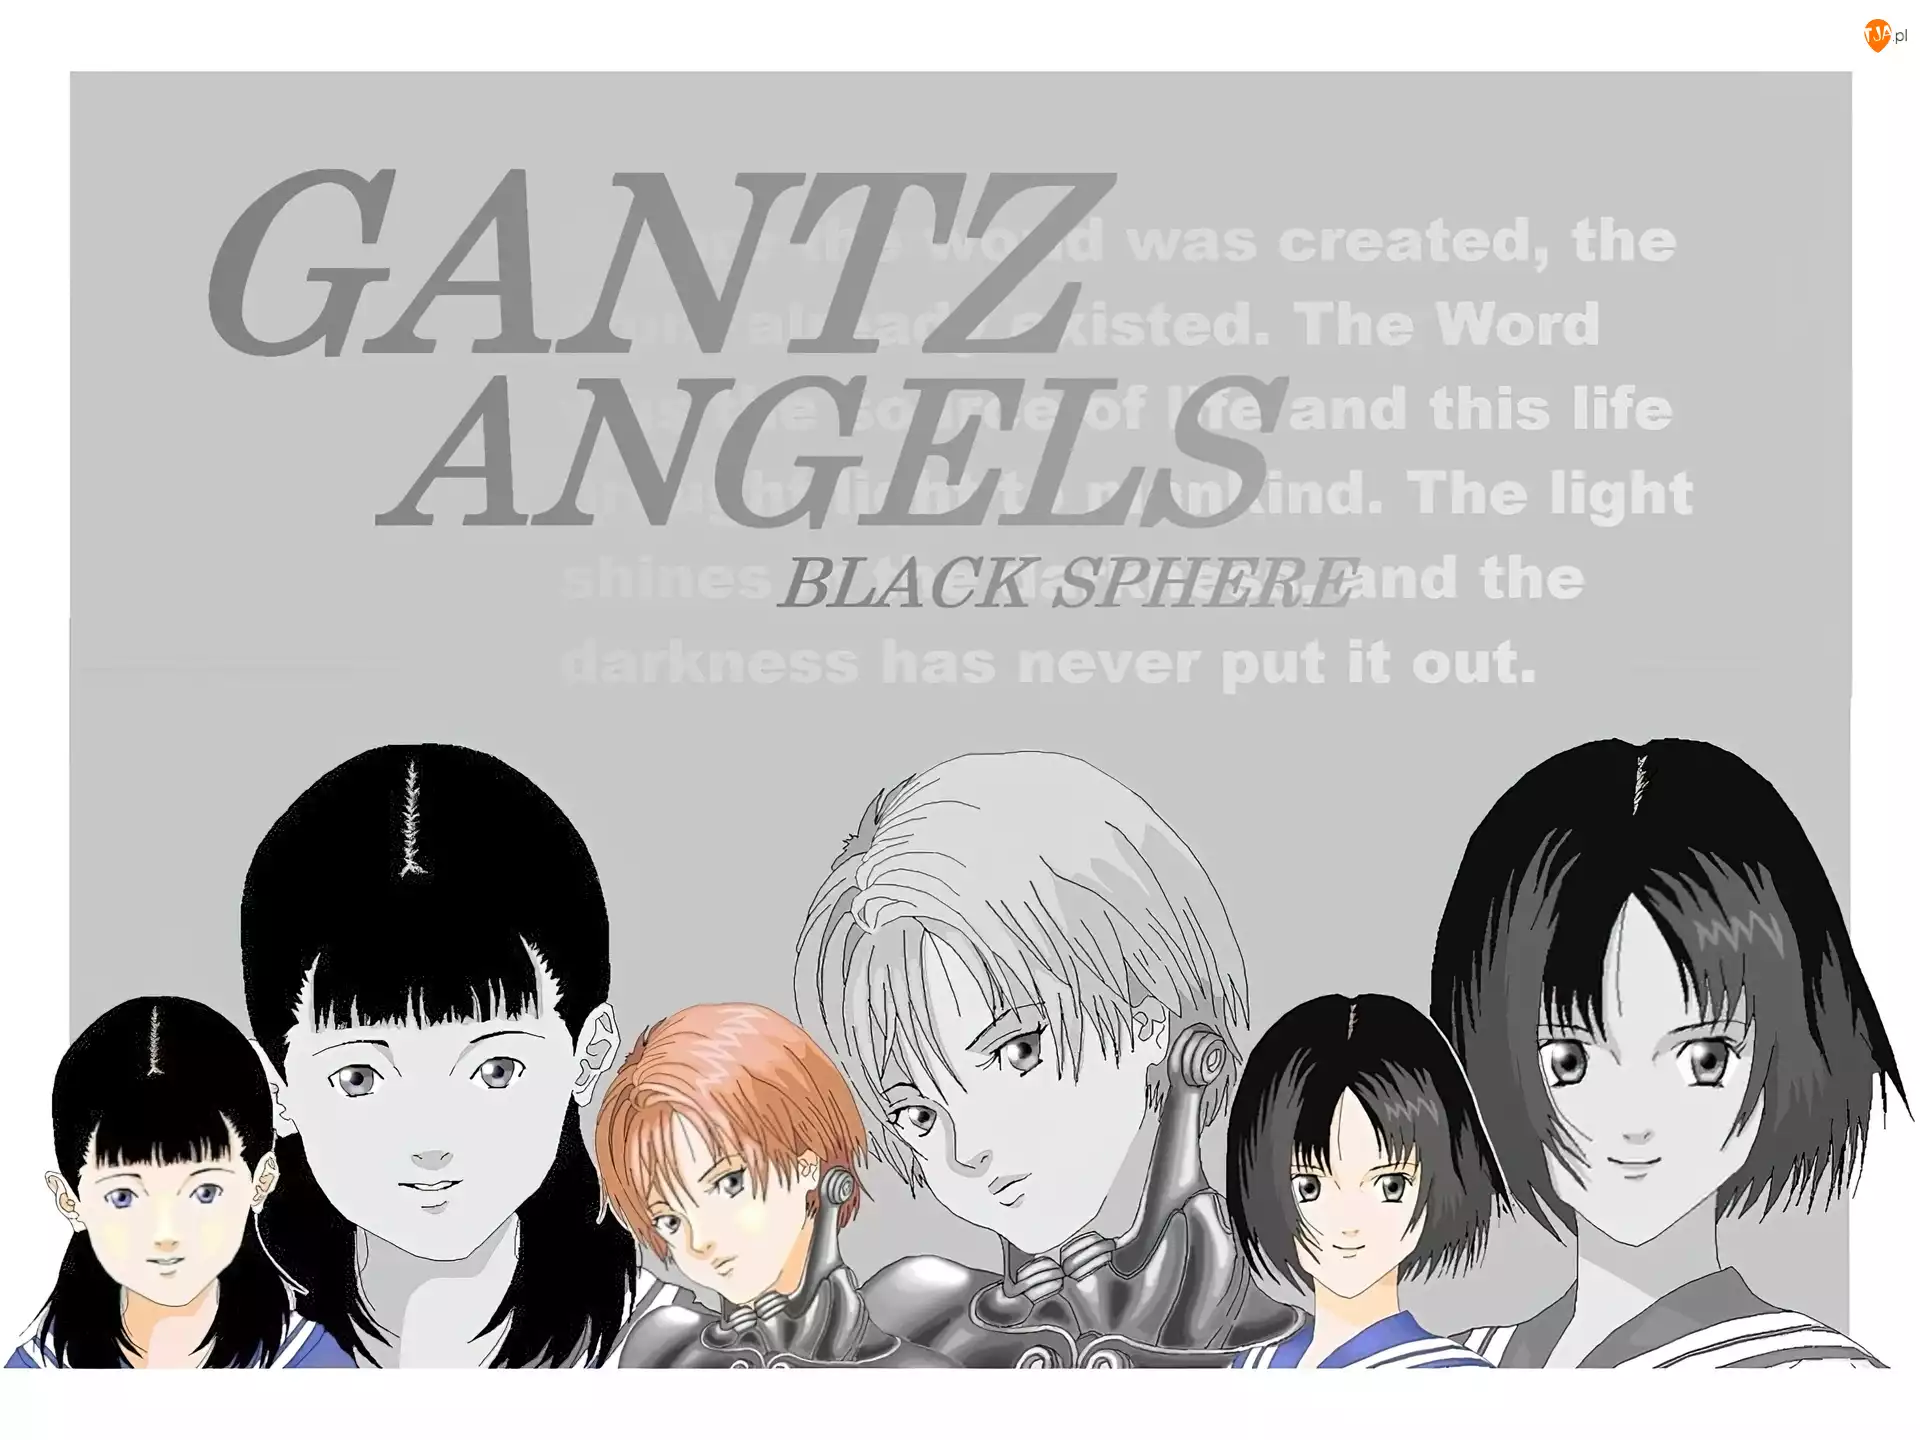 twarze, Gantz, angels, dziewczyny